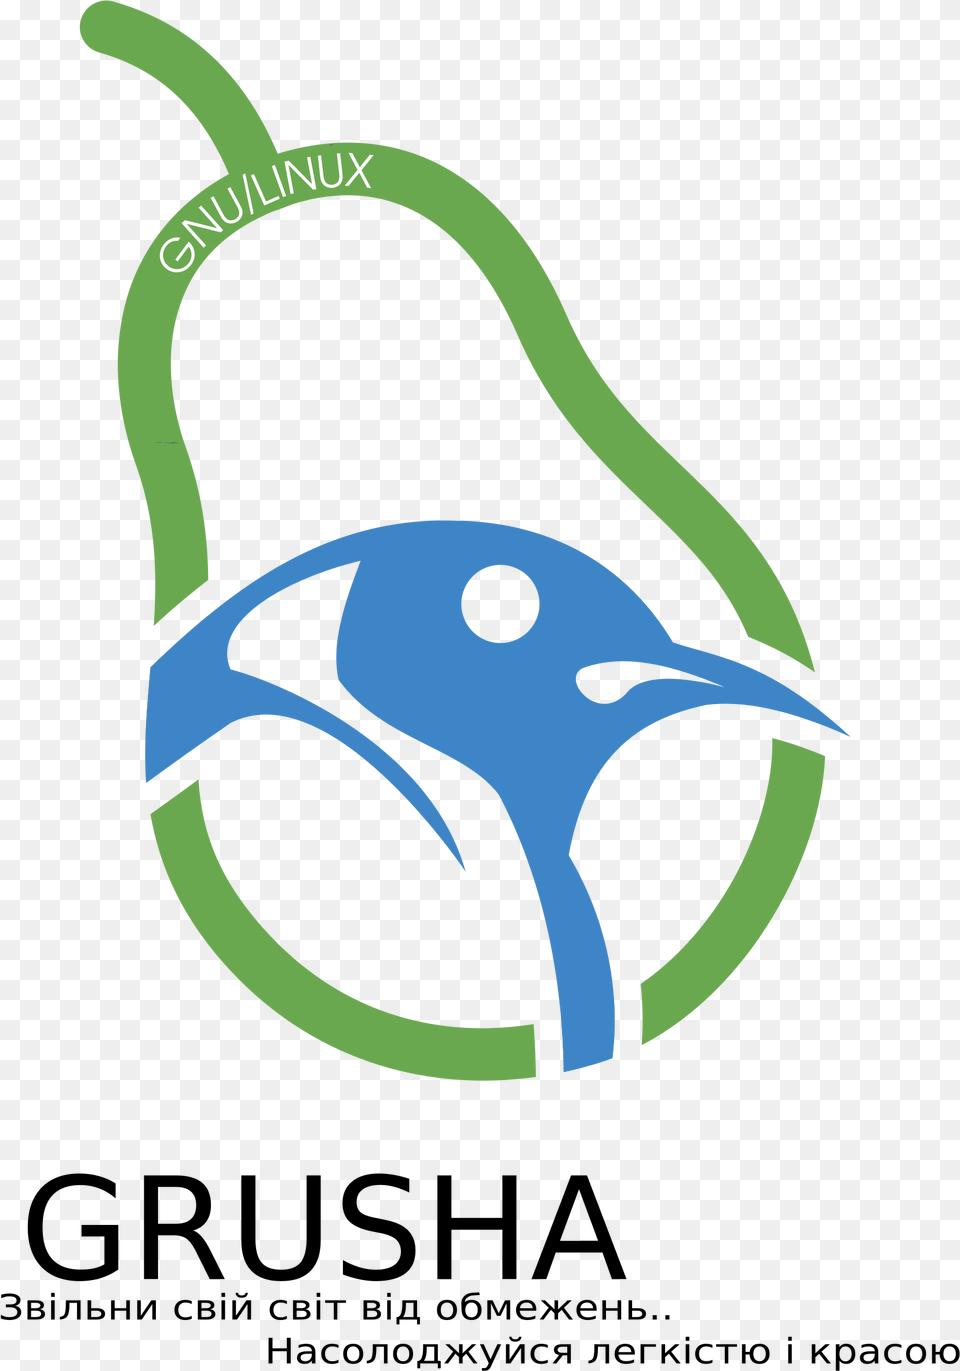 This Icons Design Of Grusha Gnulinux Logo, Animal, Beak, Bird, Fish Free Png